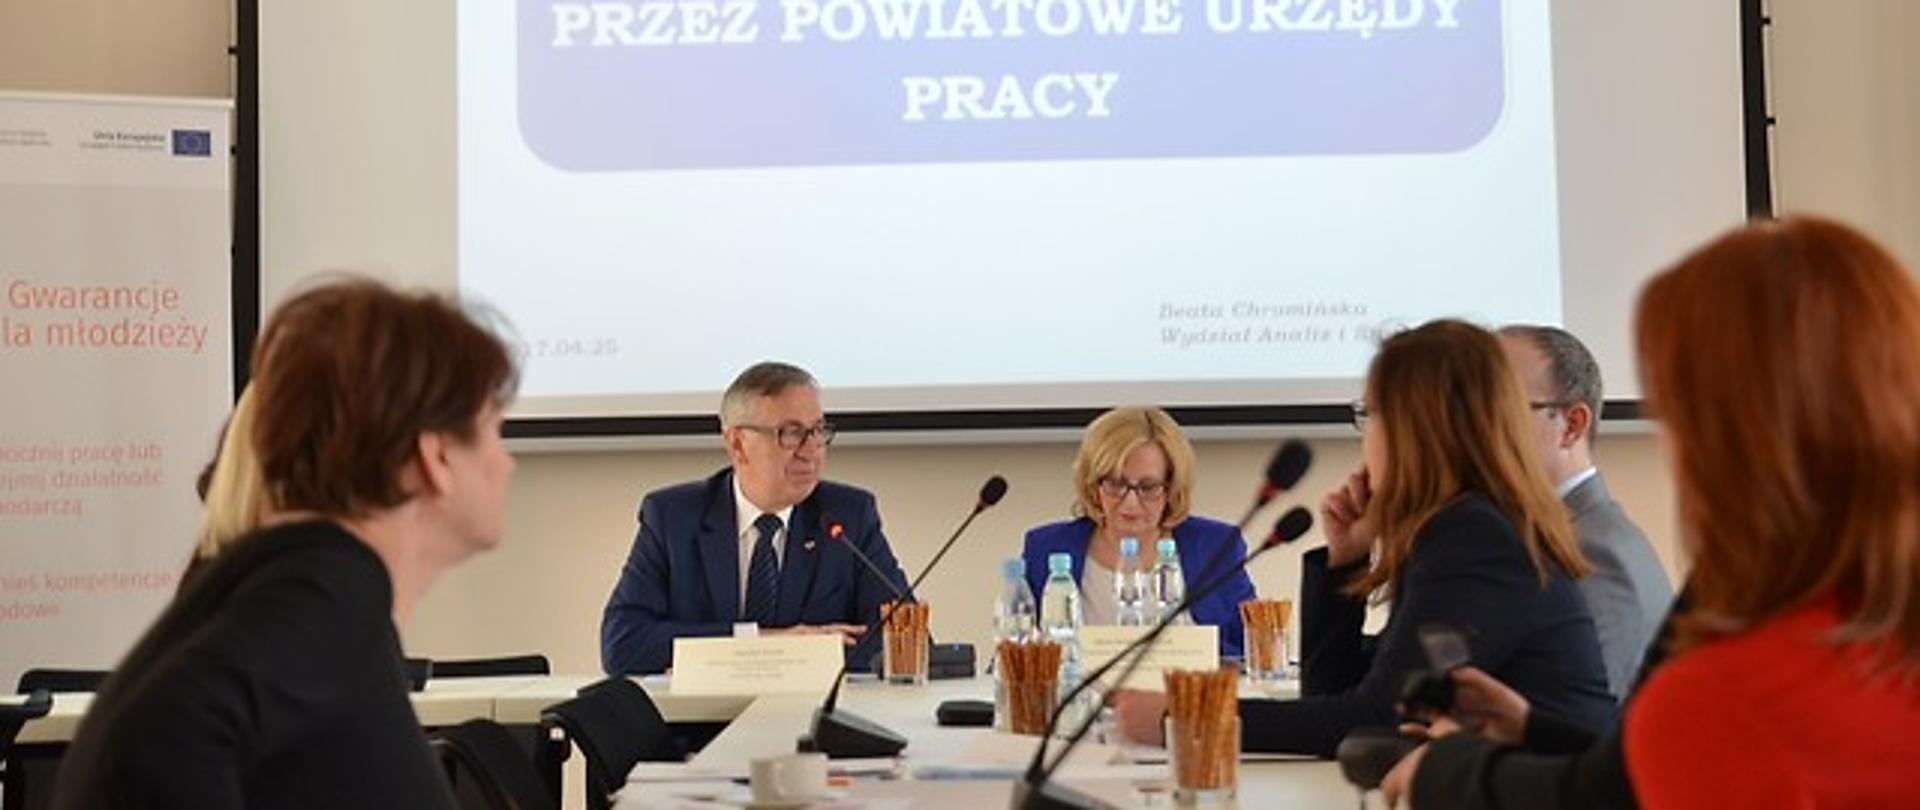 Wiceminister Stanisław Szwed podczas posiedzenia Zespołu monitorującego Gwarancje dla młodzieży.